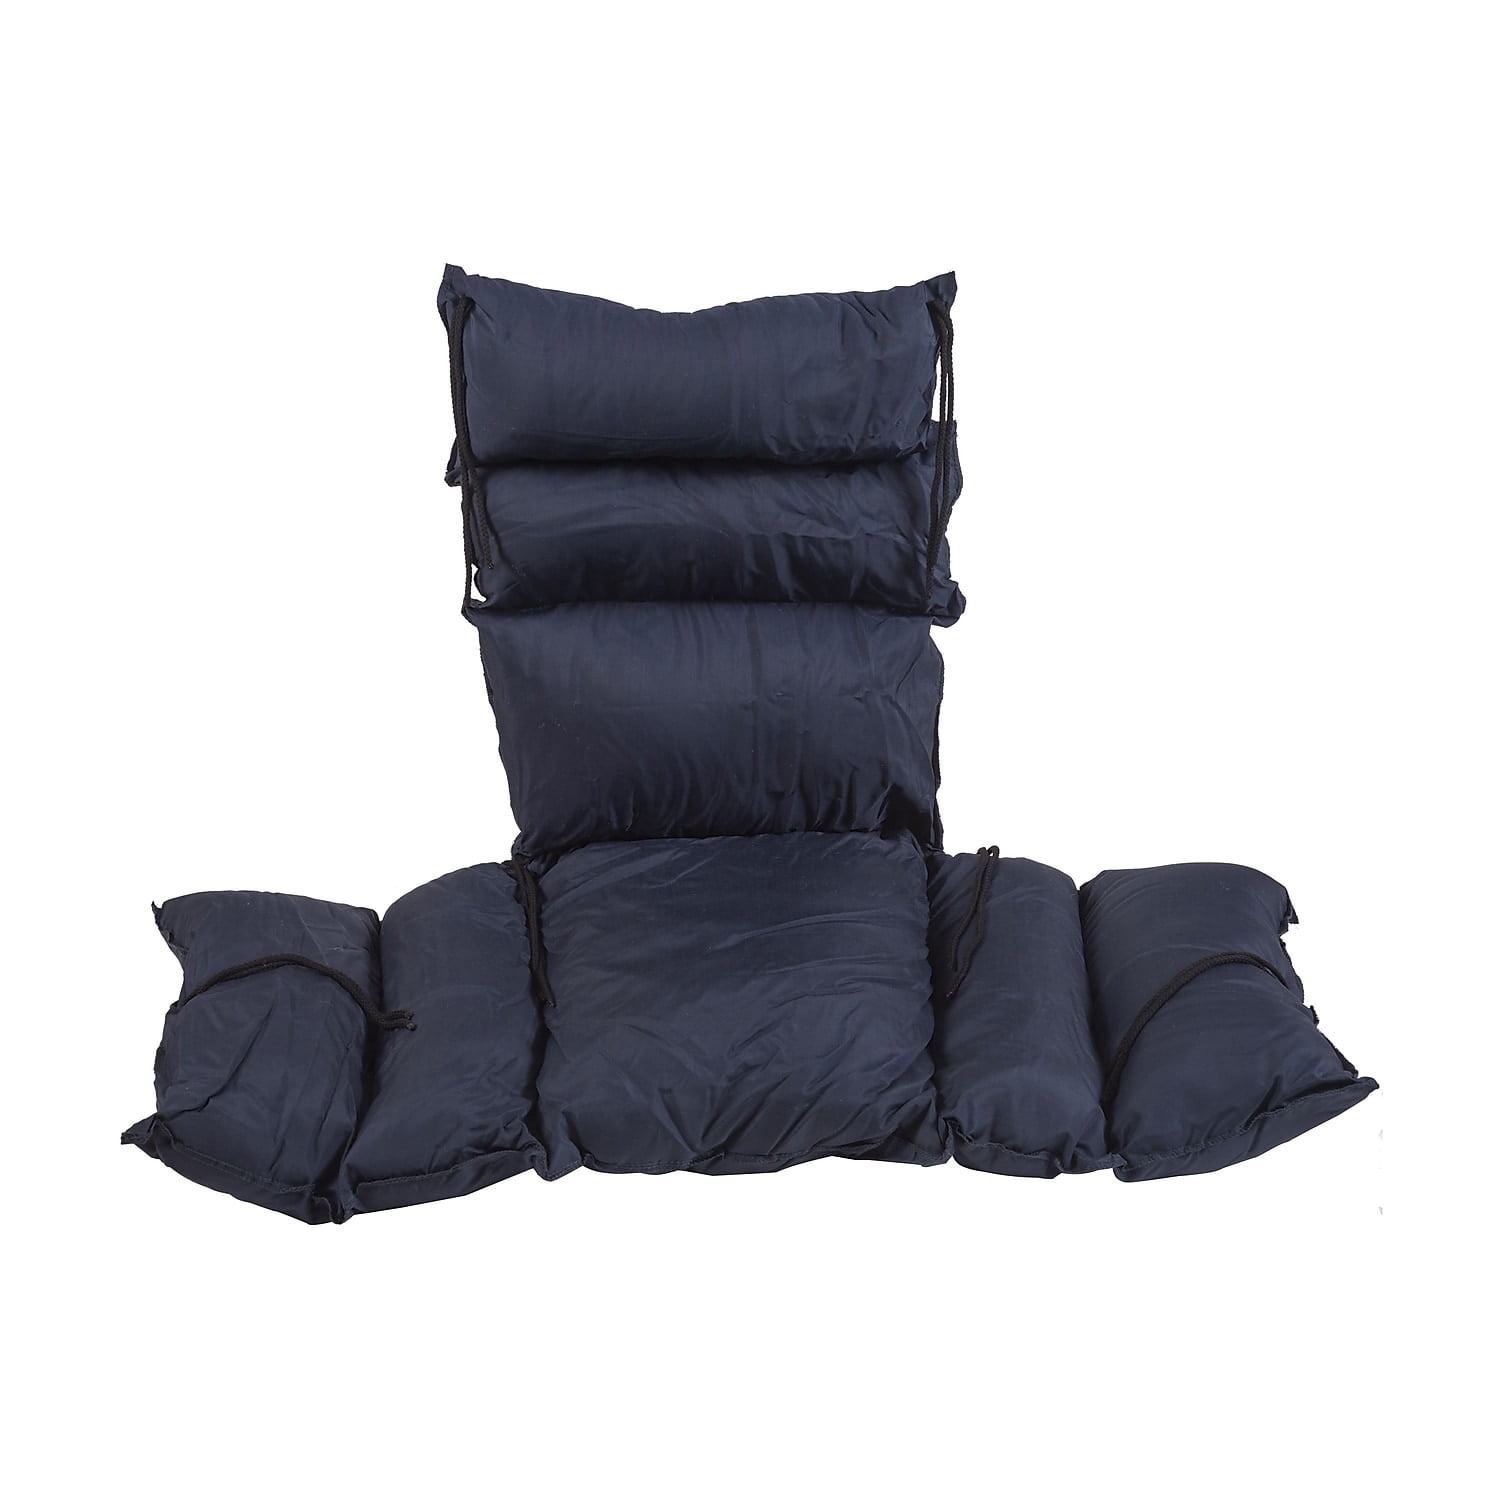 DMI Natural Pincore Wheelchair Cushion, Nylon Oxford Cover, Black, 16 x 18 x 2